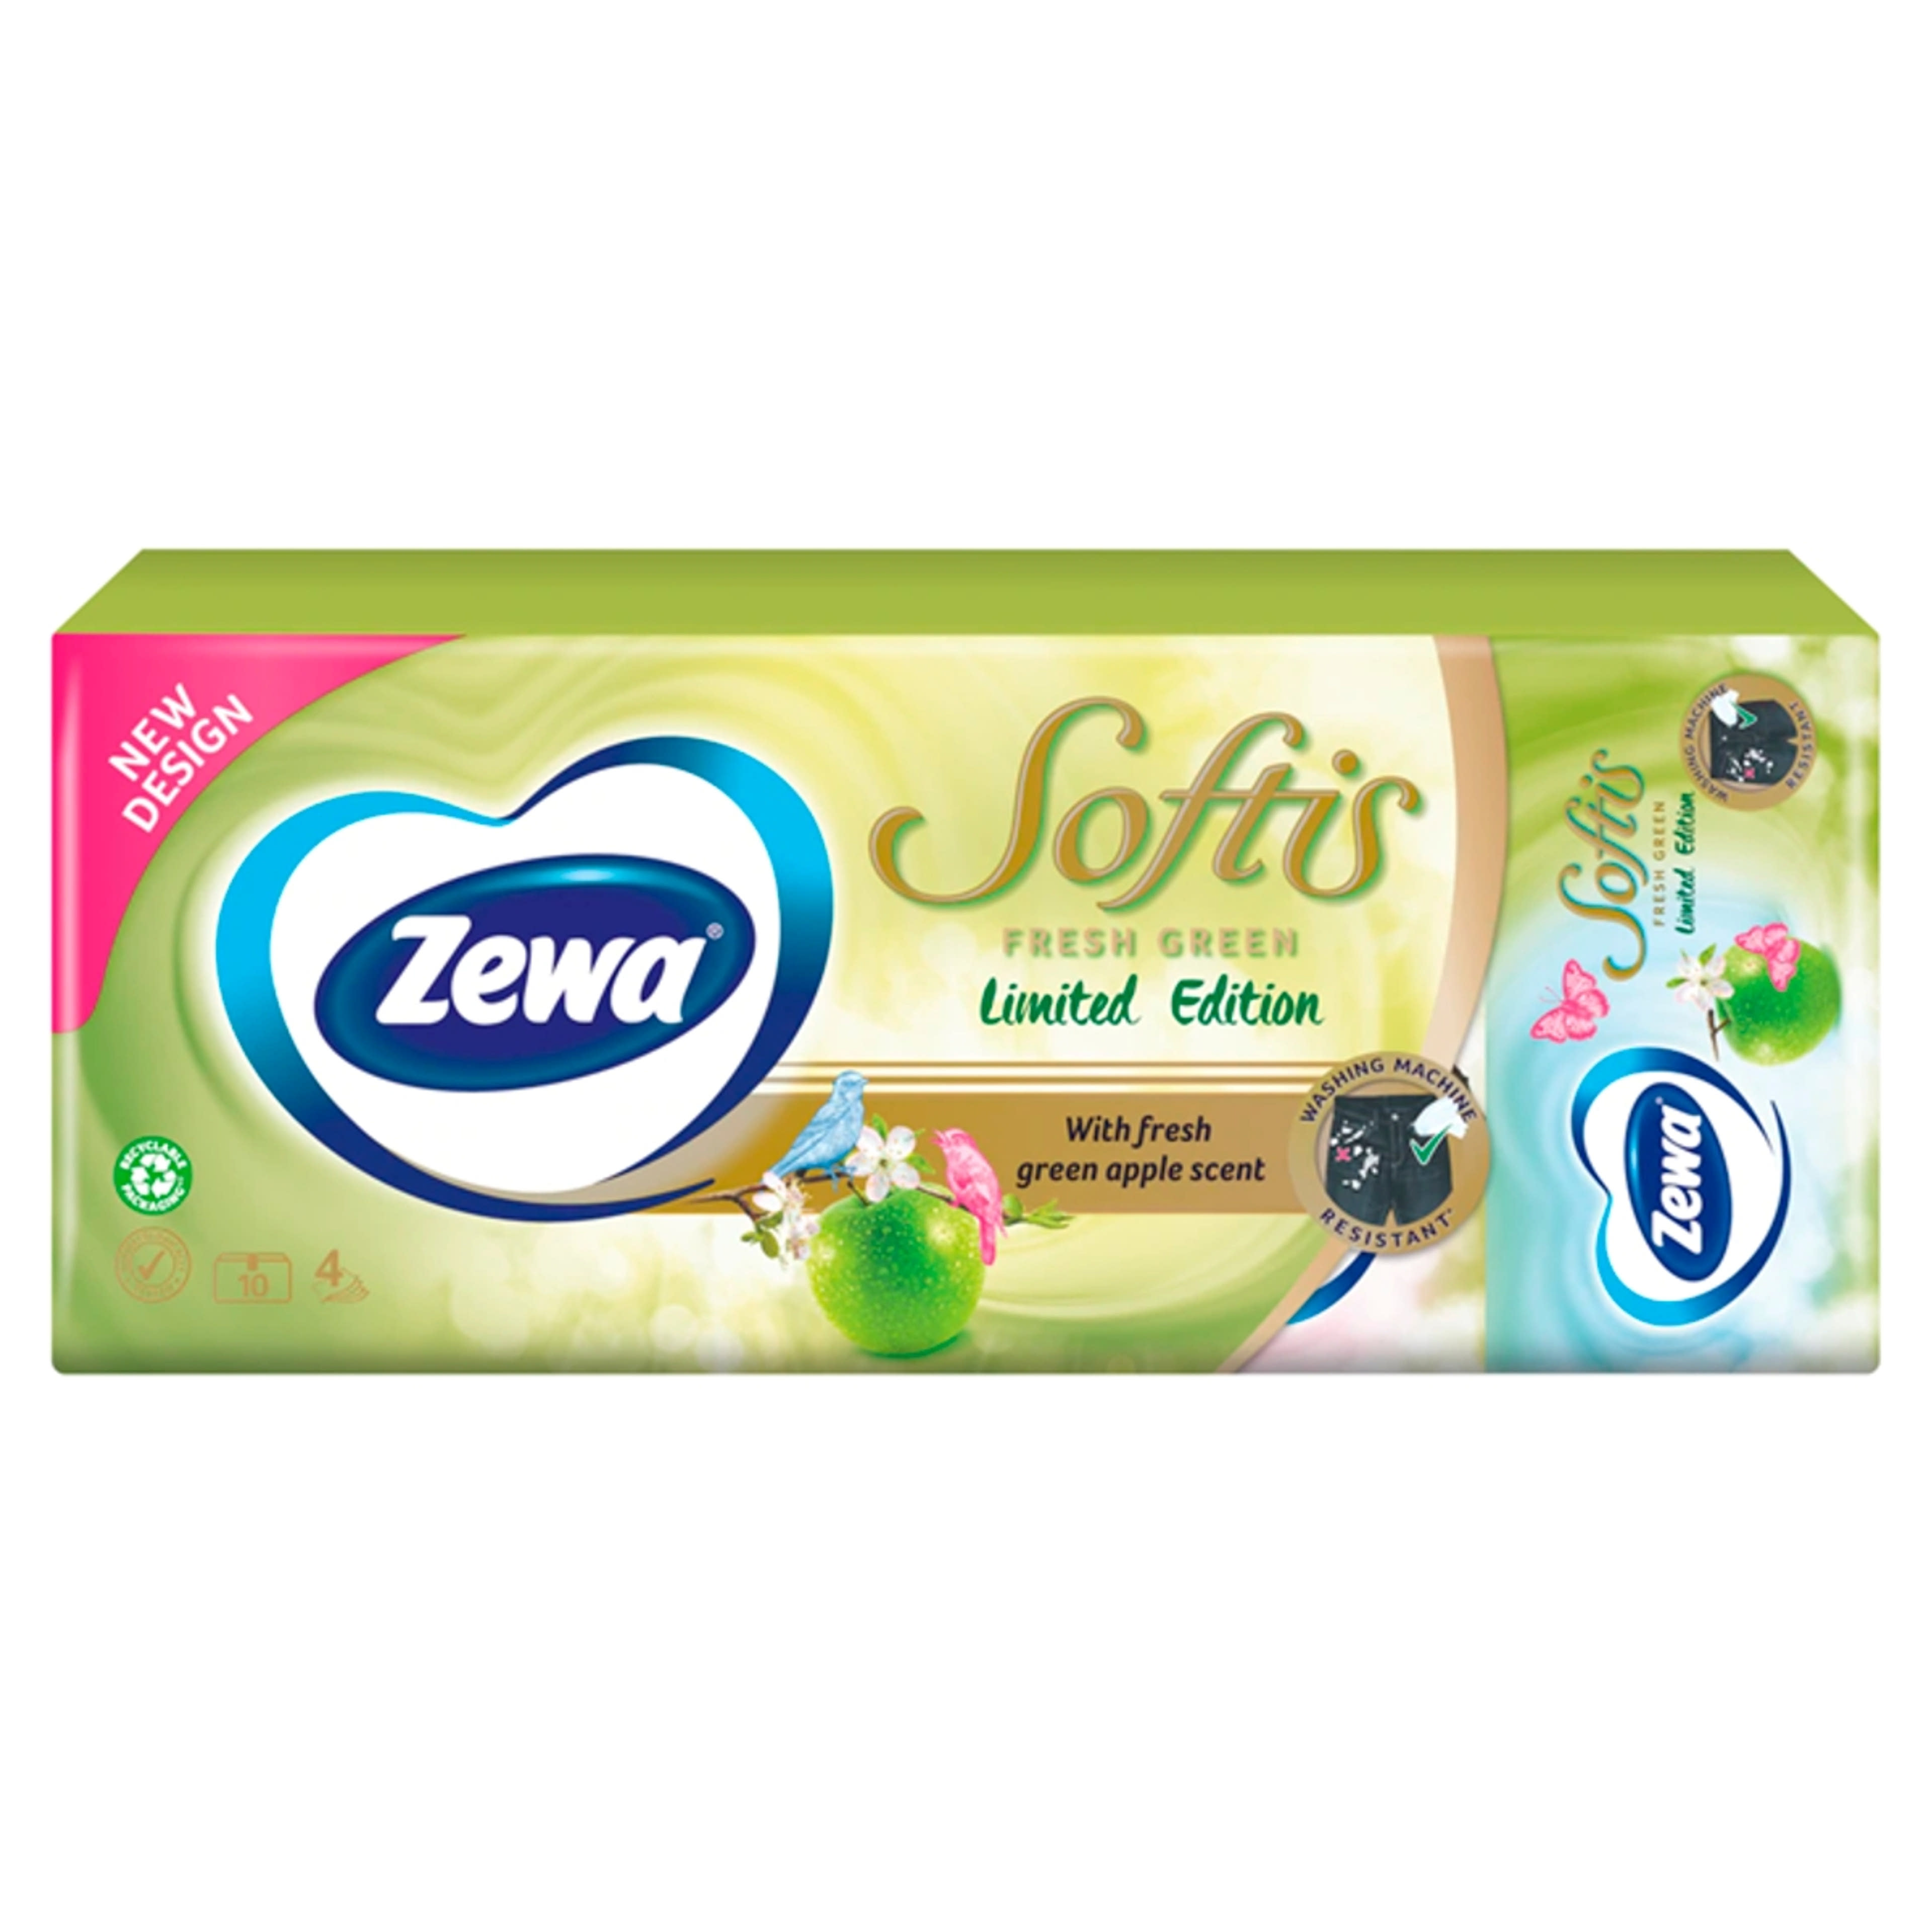 Zewa softis papírzsebkendő limited edition 4 rétegű 10x9 - 90 db-3